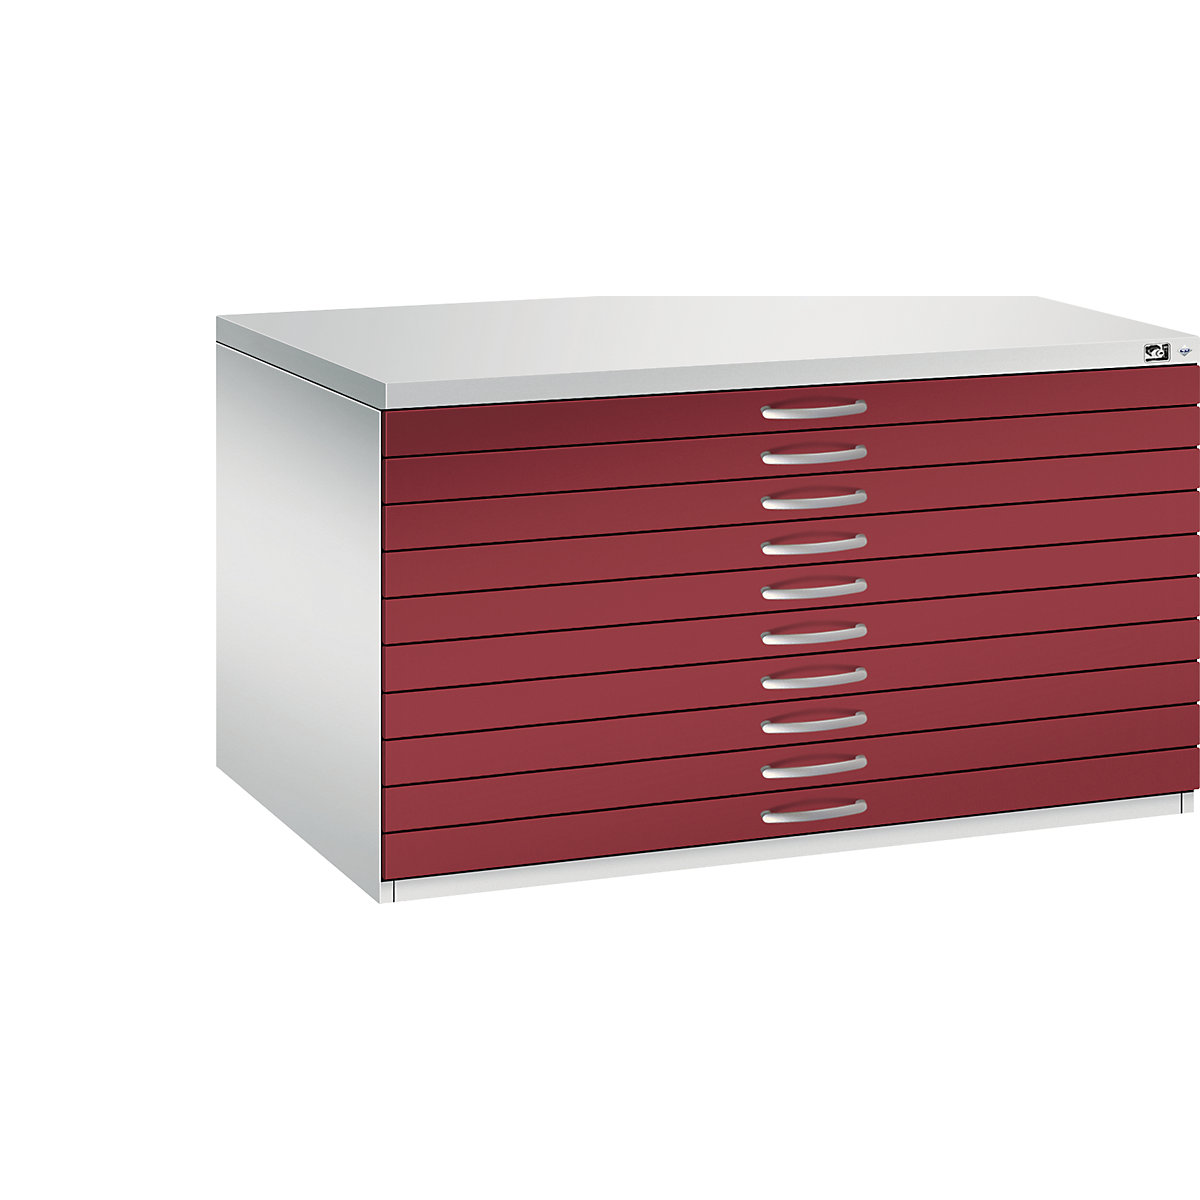 Rajztároló szekrény – C+P, DIN A0, 10 fiók, magasság 760 mm, világosszürke / rubinvörös-22